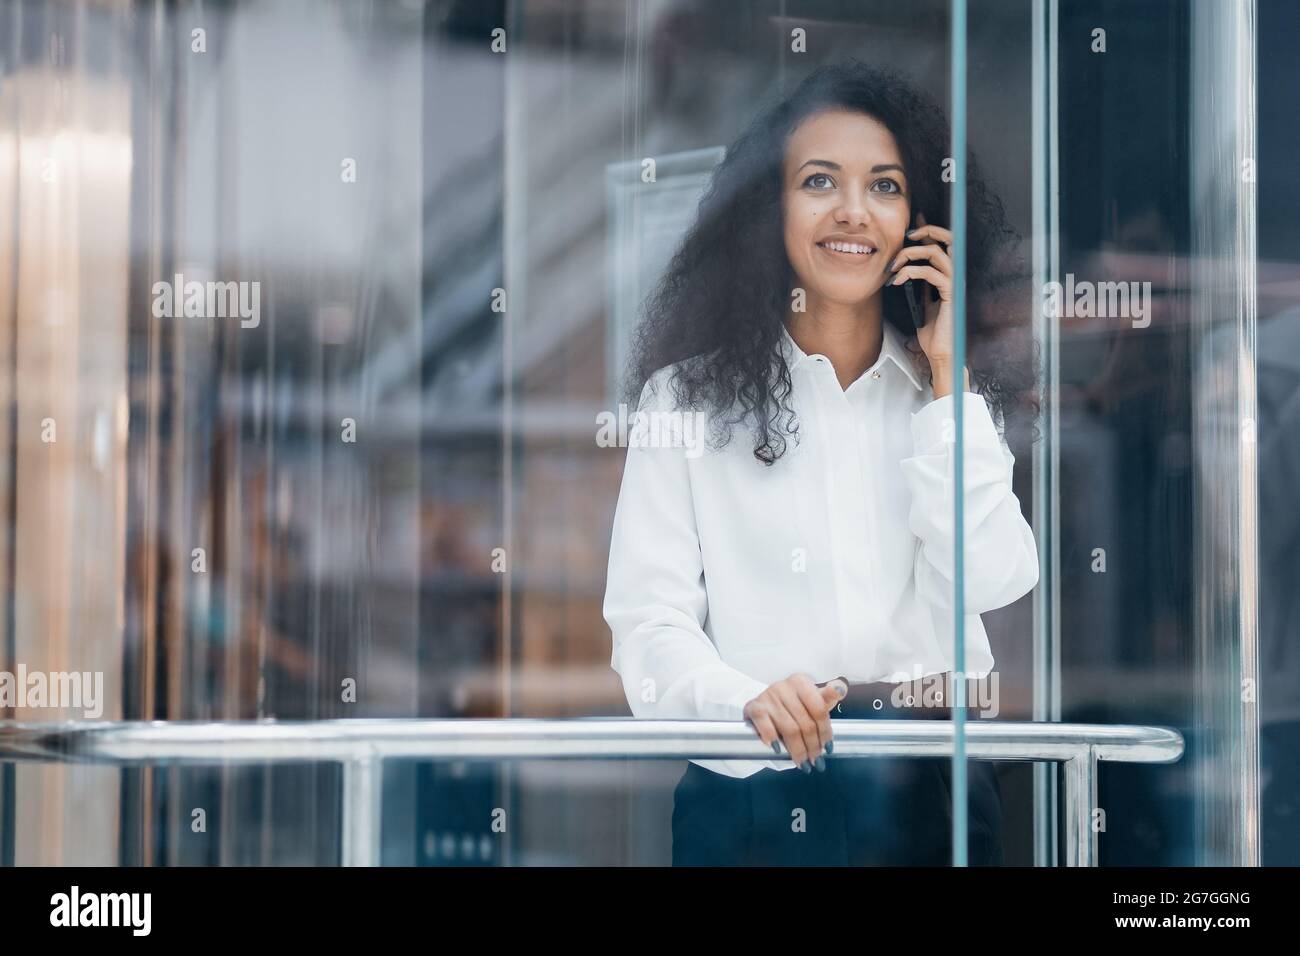 Durch das Glas. Junge Frau, die auf ihrem Smartphone spricht, während sie im Aufzug steht. Stockfoto